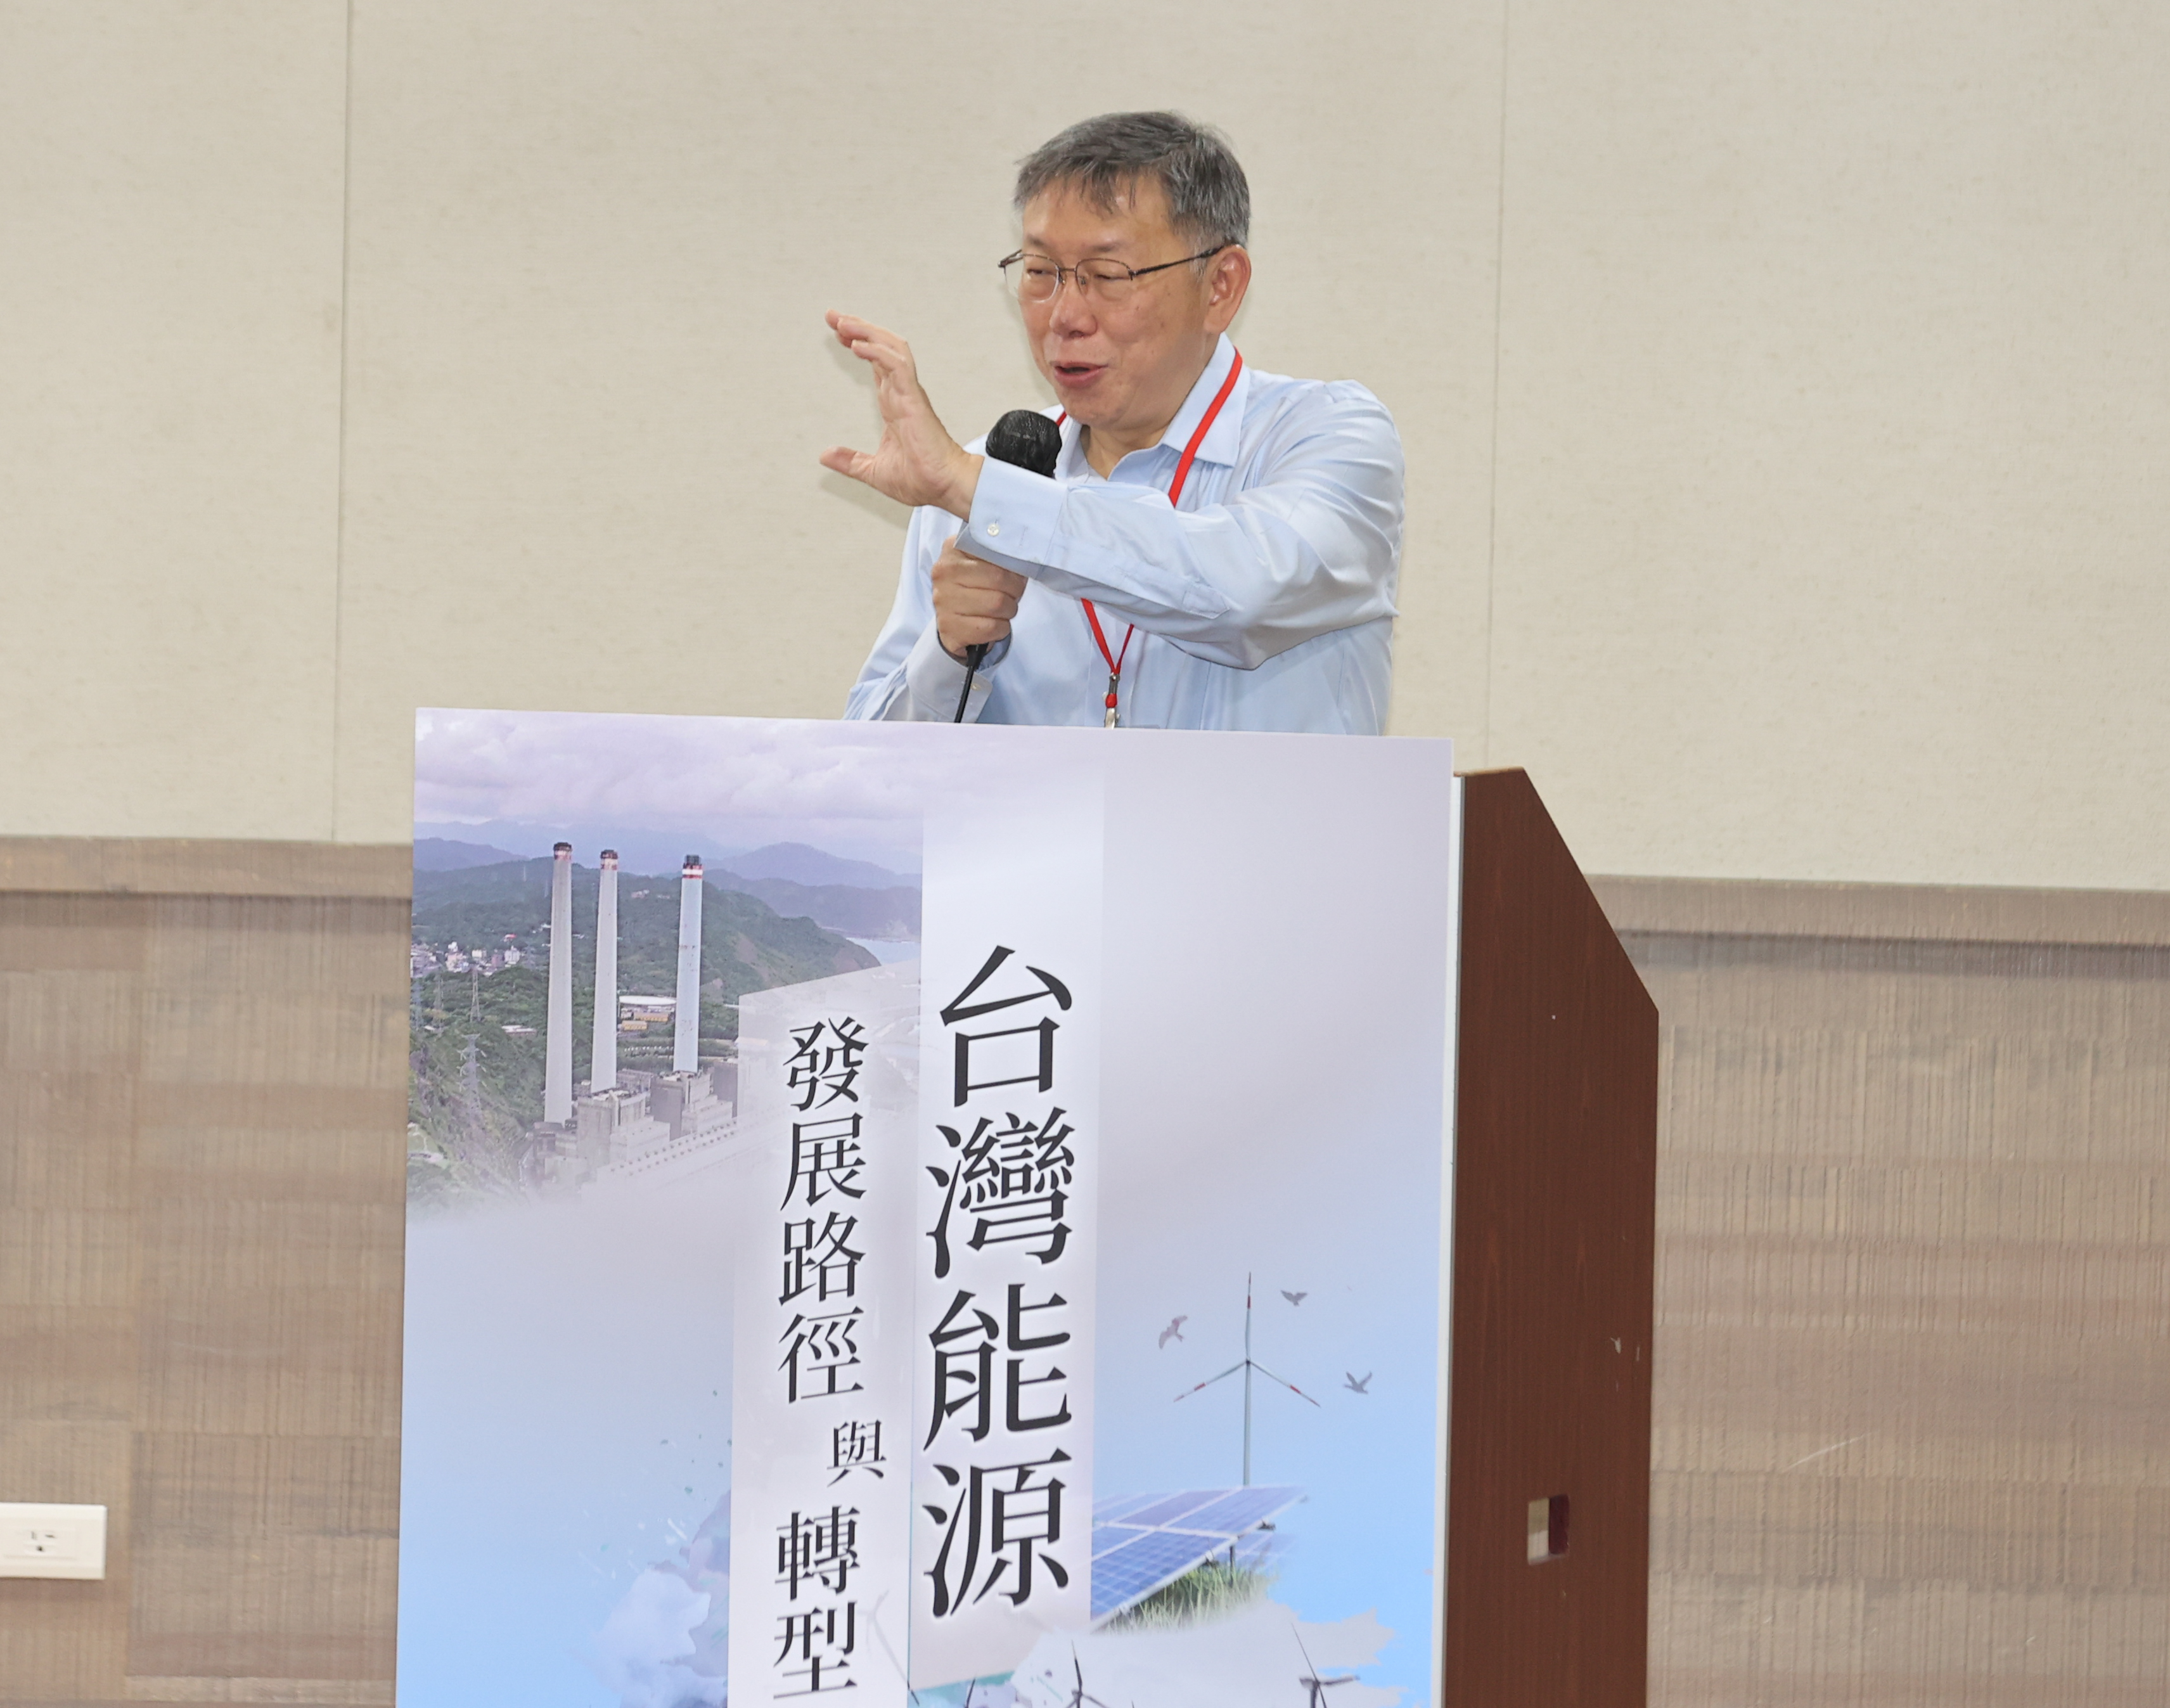 民众党主席柯文哲上午出席台湾能源发展路径与转型论坛。记者曾原信／摄影